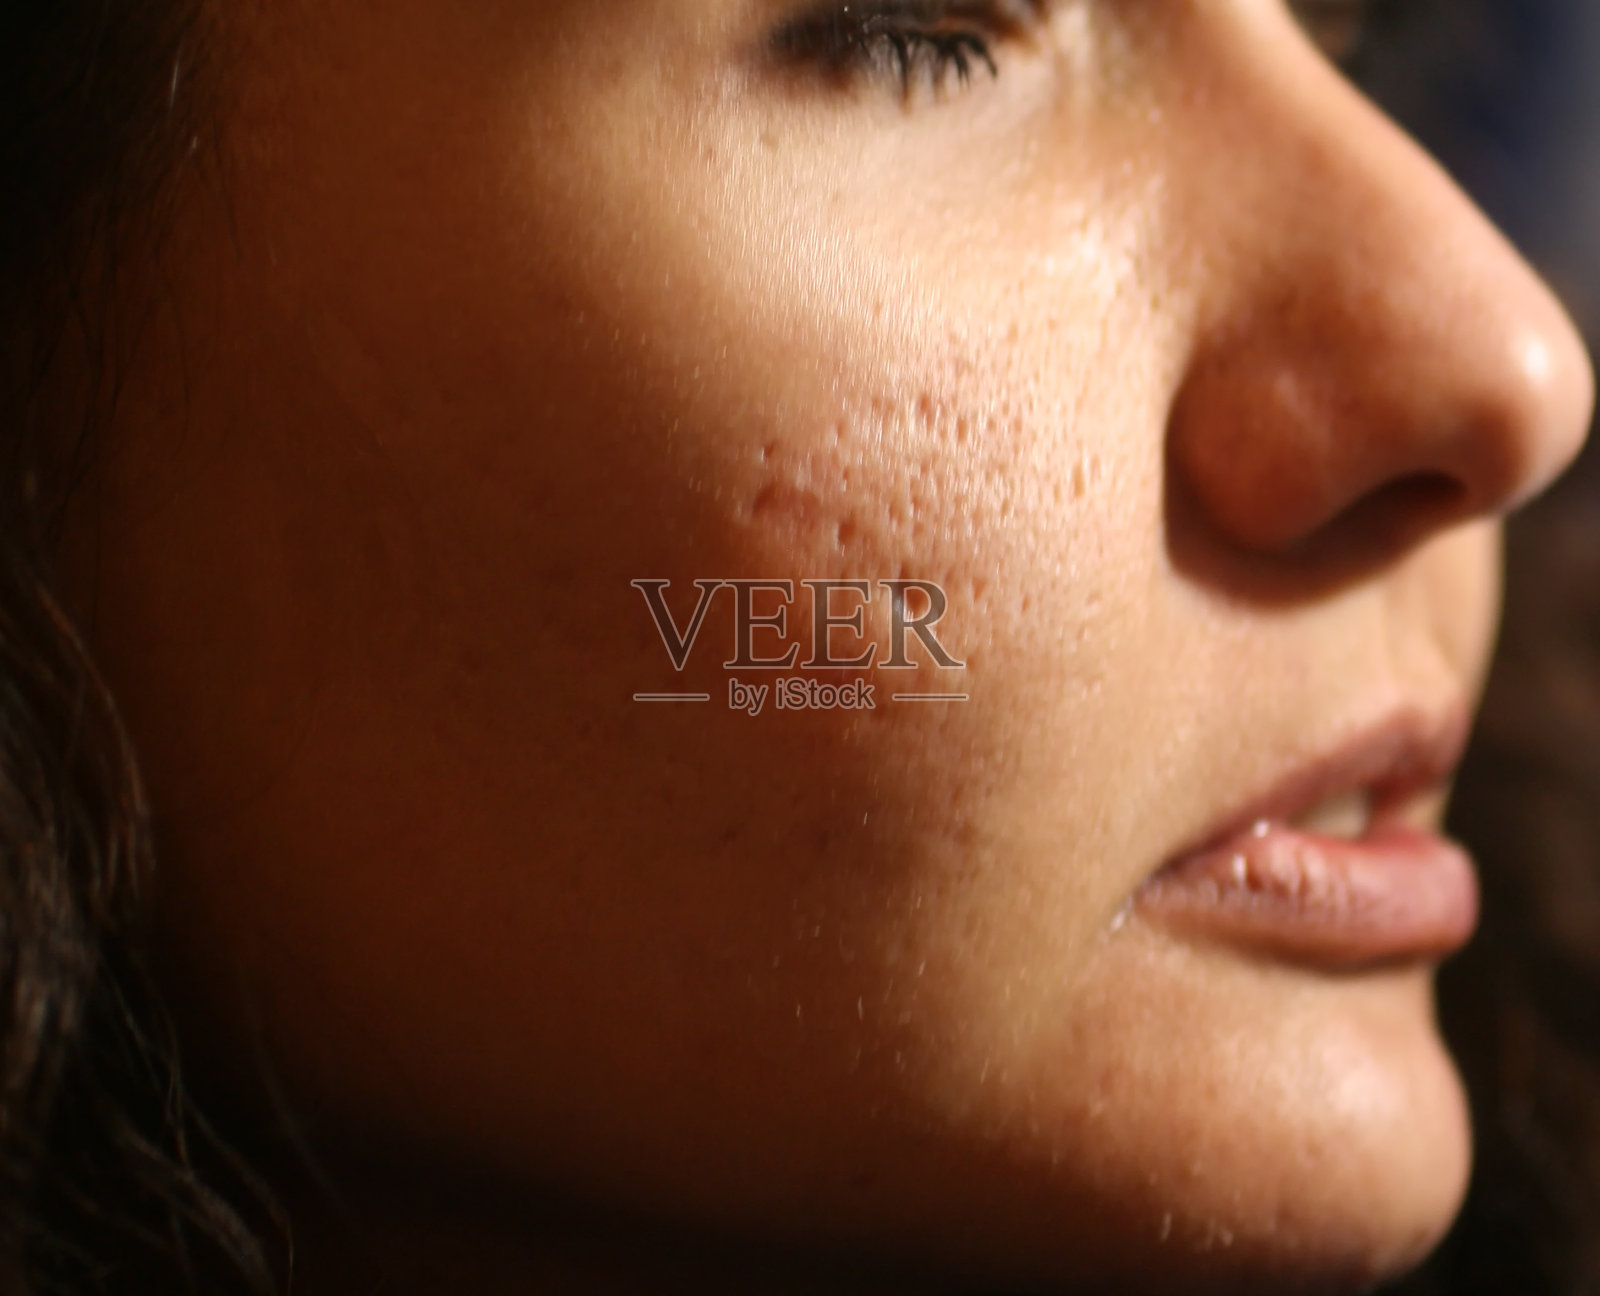 脸上有丘疹和痤疮的发炎皮肤。痤疮造成的疤痕照片摄影图片